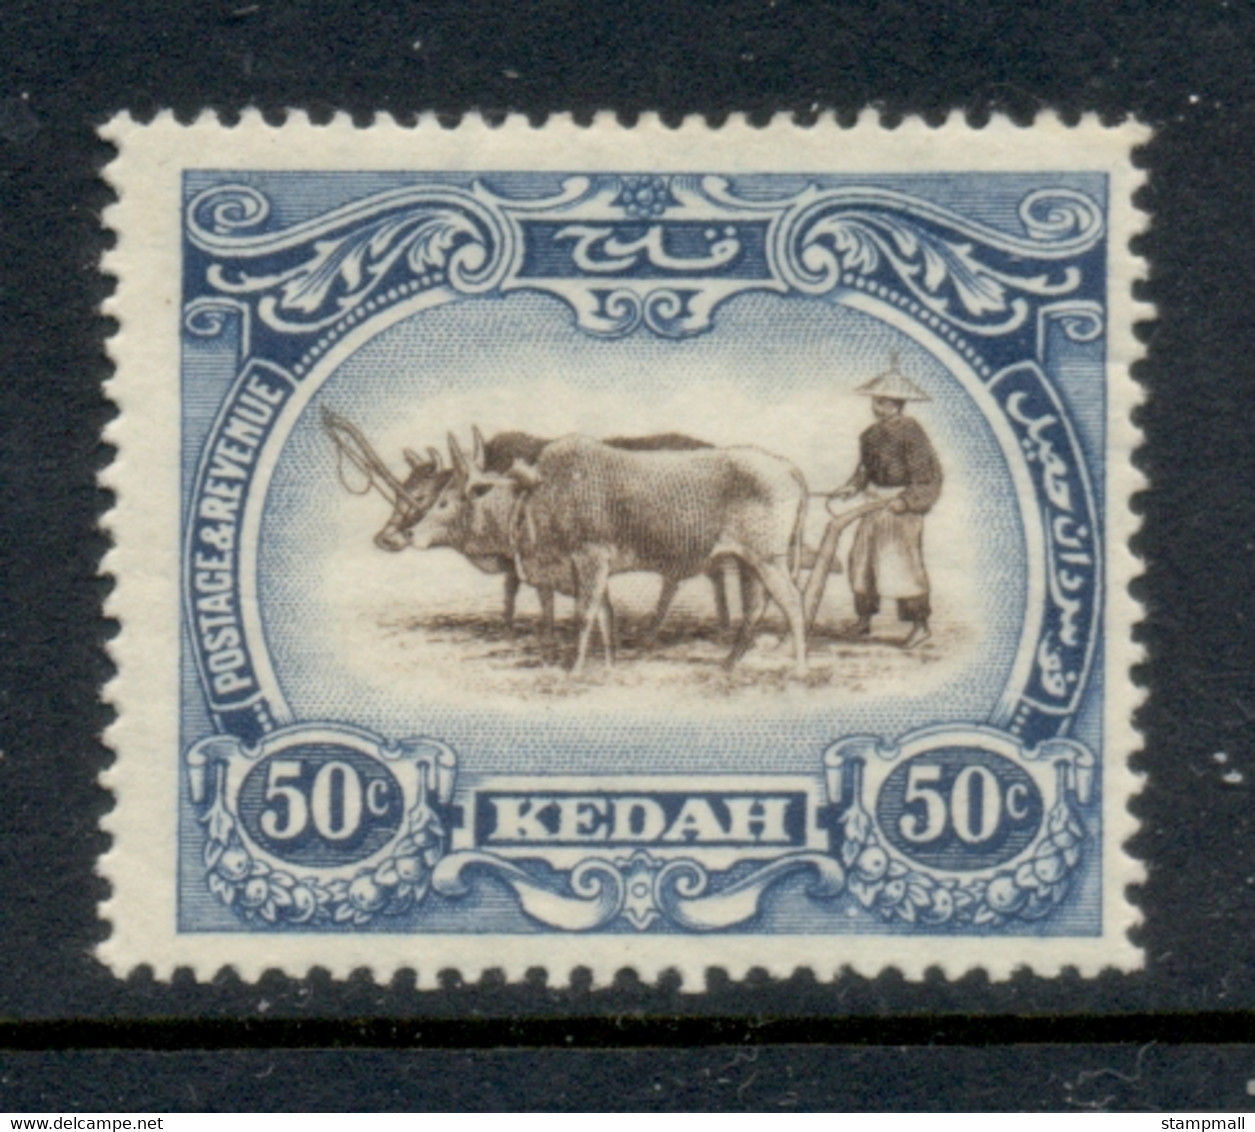 Malaya Kedah 1912-21 Pictorial, Native Plowing, Wmk. Multi Crown Script CA 50c MLH - Kedah